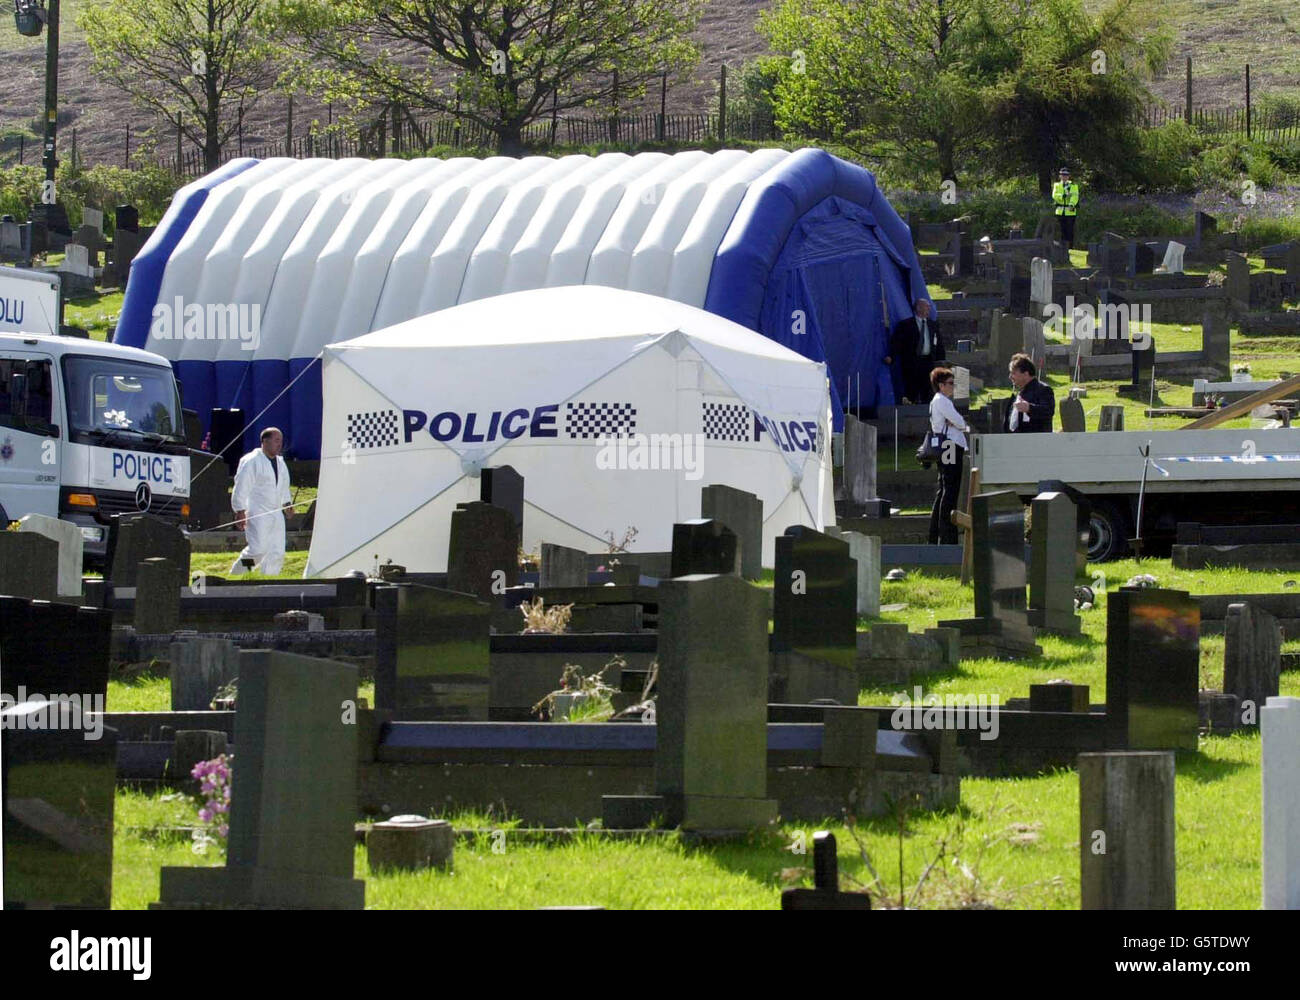 Ein Polizeizelt bedeckt das Grab von Joseph Kappen auf dem Friedhof von Goytre in der Nähe von Port Talbot, Südwales. Die Polizei bereitet sich darauf vor, den Leichnam zu exhumieren, weil Kappen ein Hauptverdächtiger bei der Untersuchung der Morde an drei Mädchen im Teenageralter vor fast 30 Jahren ist. Stockfoto